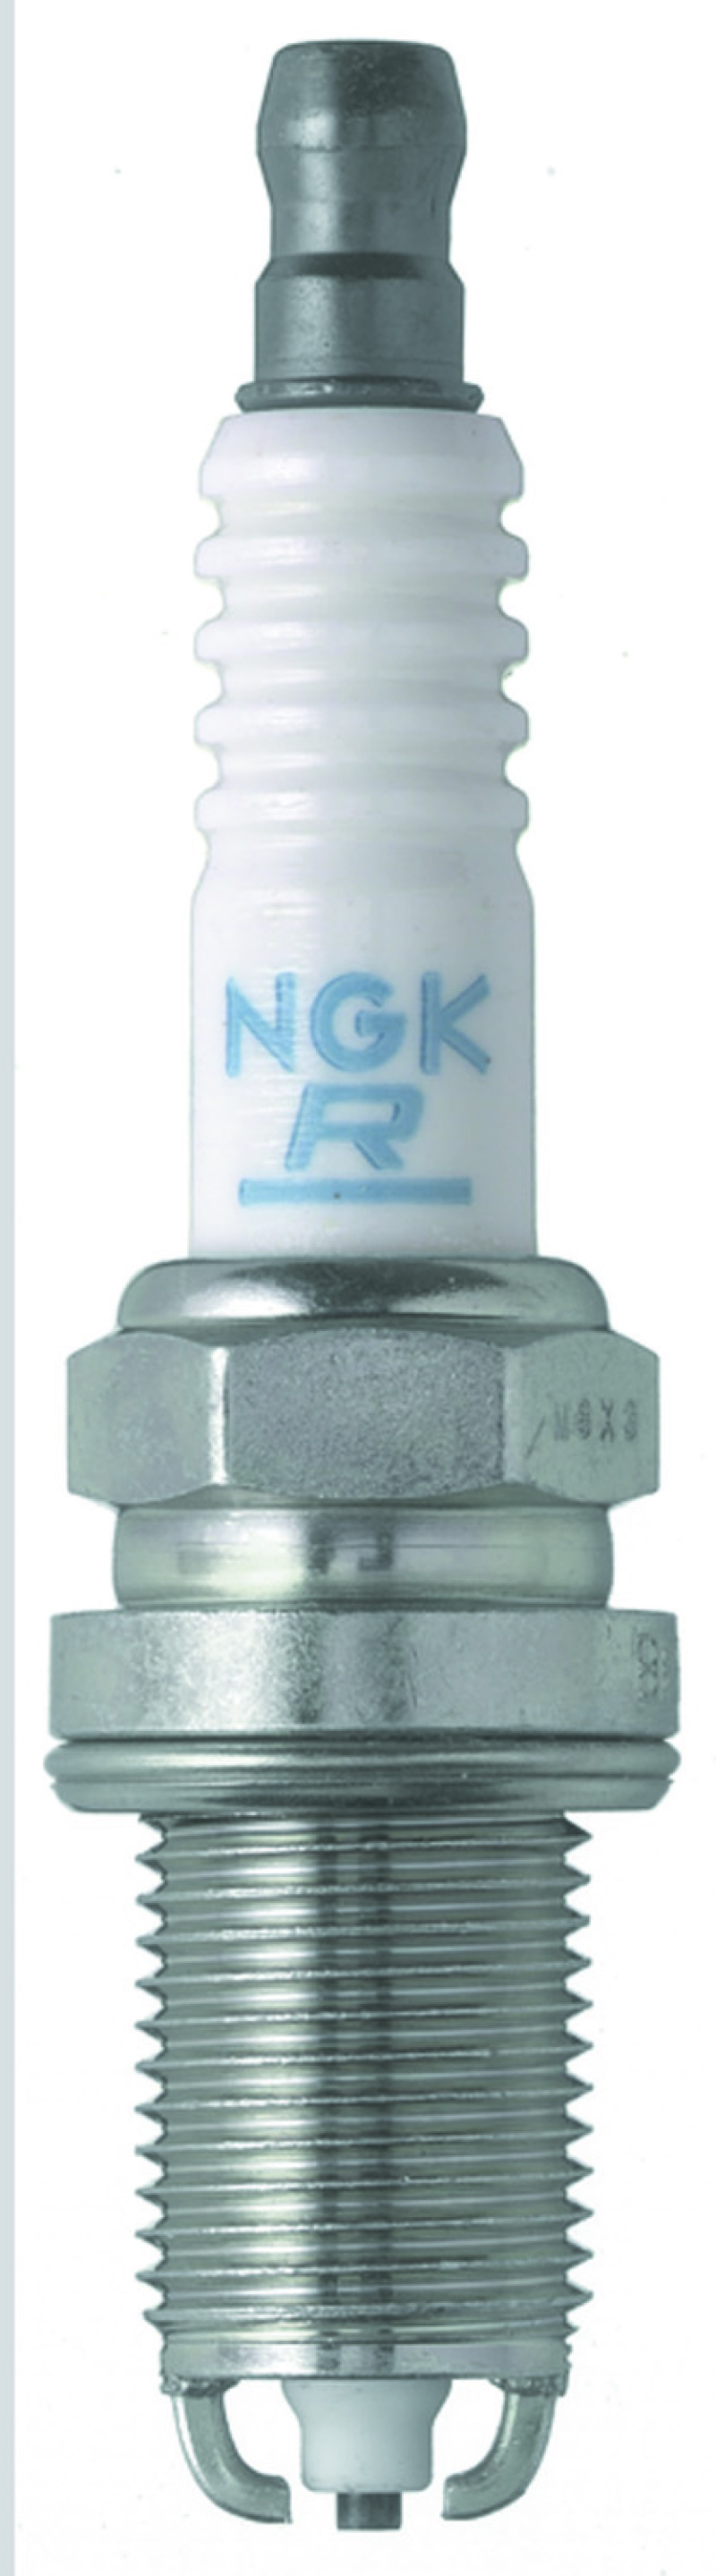 NGK Nickel Spark Plug Box of 4 (BKR5EKU) - 3964